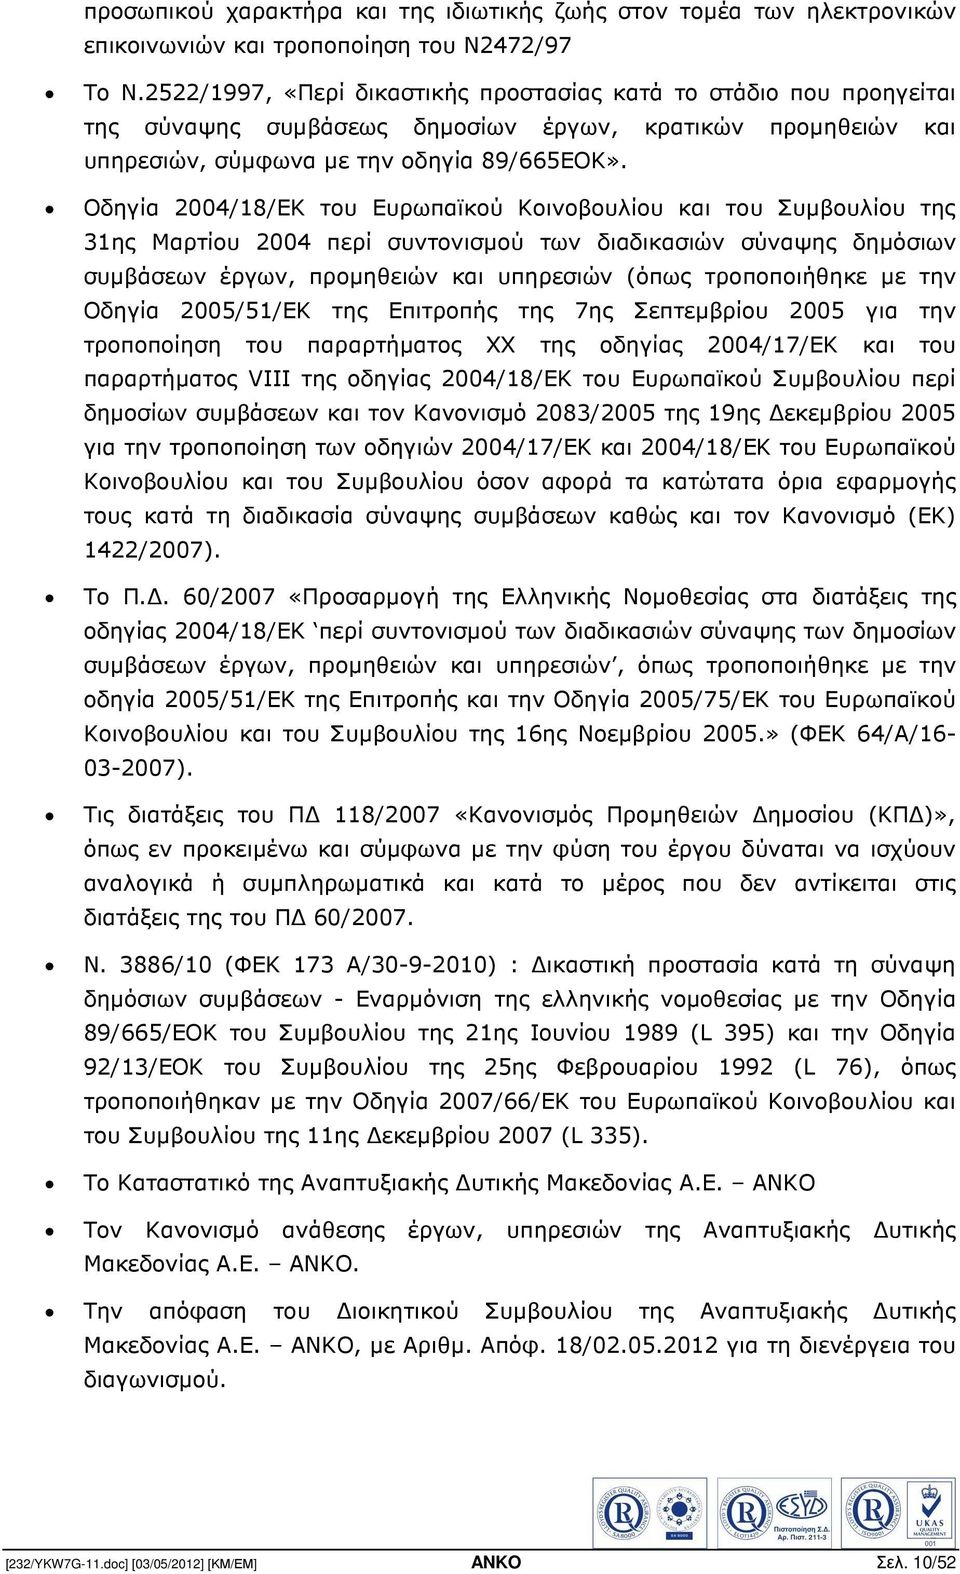 Οδηγία 2004/18/ΕΚ του Ευρωπαϊκού Κοινοβουλίου και του Συµβουλίου της 31ης Μαρτίου 2004 περί συντονισµού των διαδικασιών σύναψης δηµόσιων συµβάσεων έργων, προµηθειών και υπηρεσιών (όπως τροποποιήθηκε